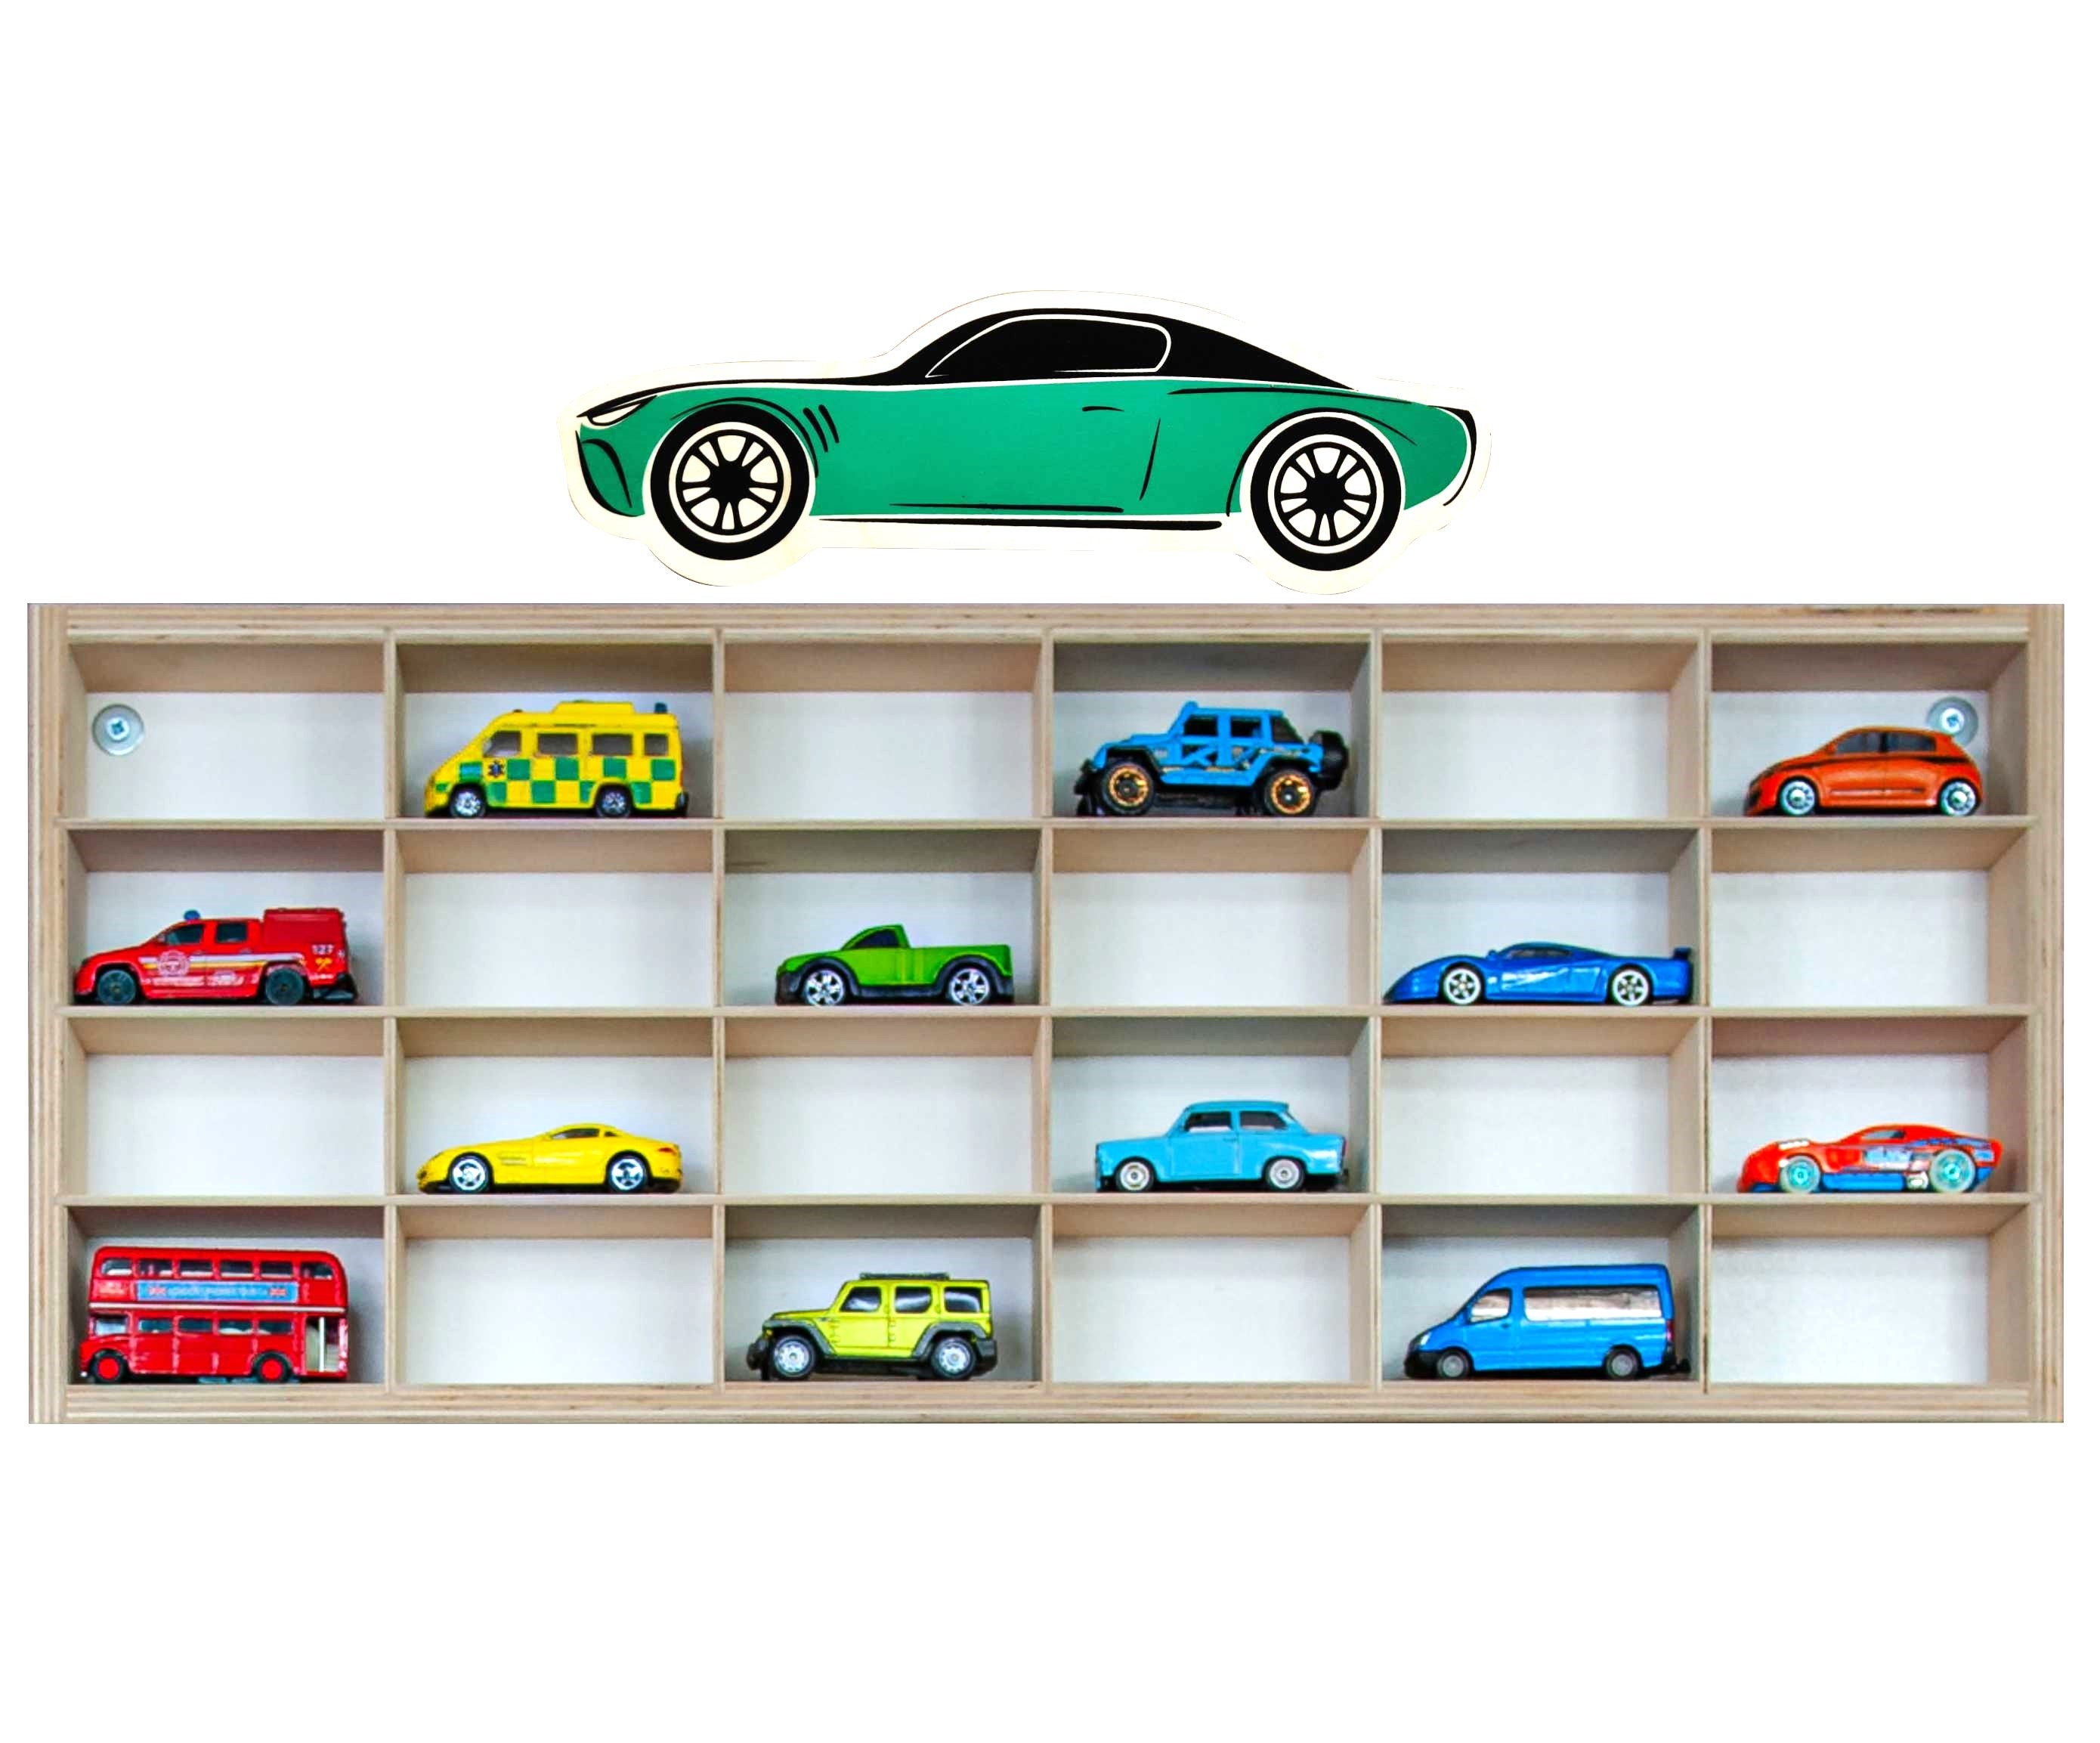 Toy Car Shelf / Toy Car Storage/ Hot Wheels Storage / Diecast Model Car /  Display Case Shelf / Garage for Hot Wheels / Matchbox Toy Cars 